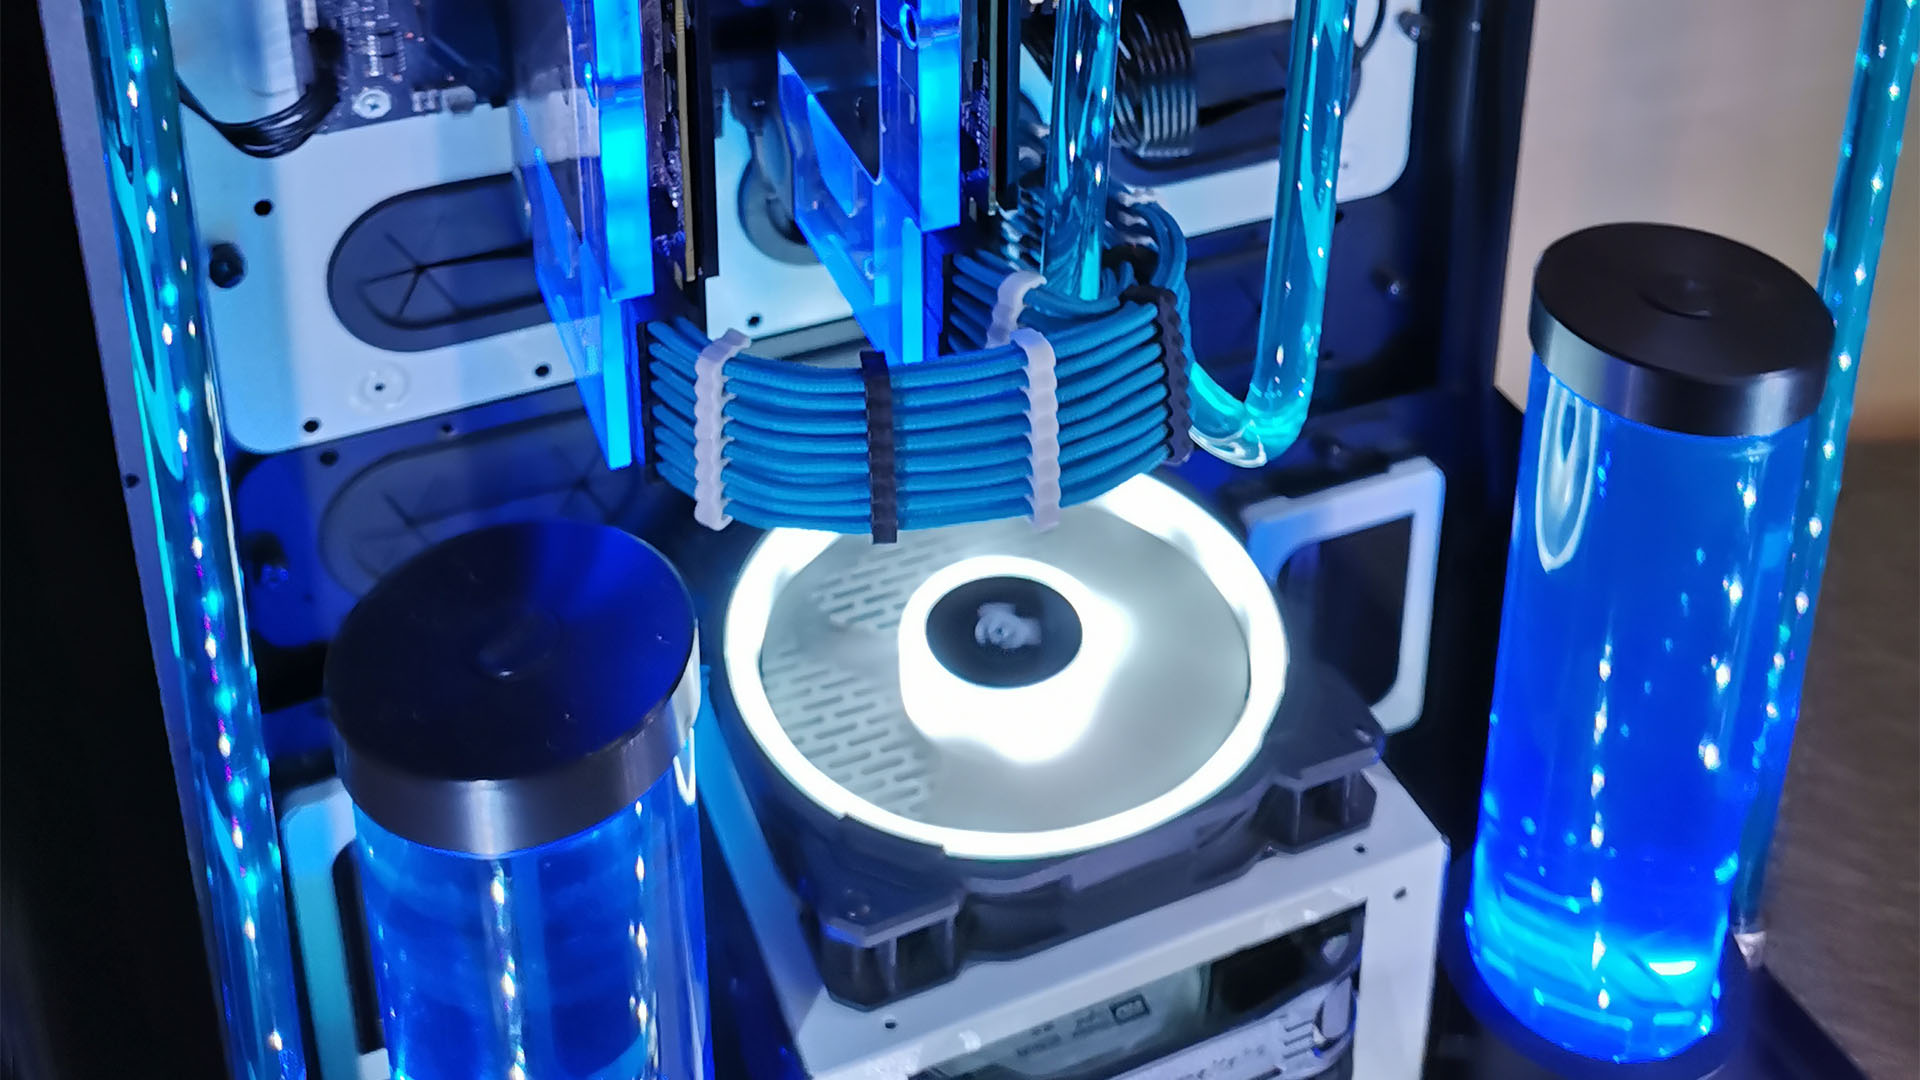 Mavi Thermaltake Tower 900 kasa içindeki su soğutmalı oyun bilgisayarı